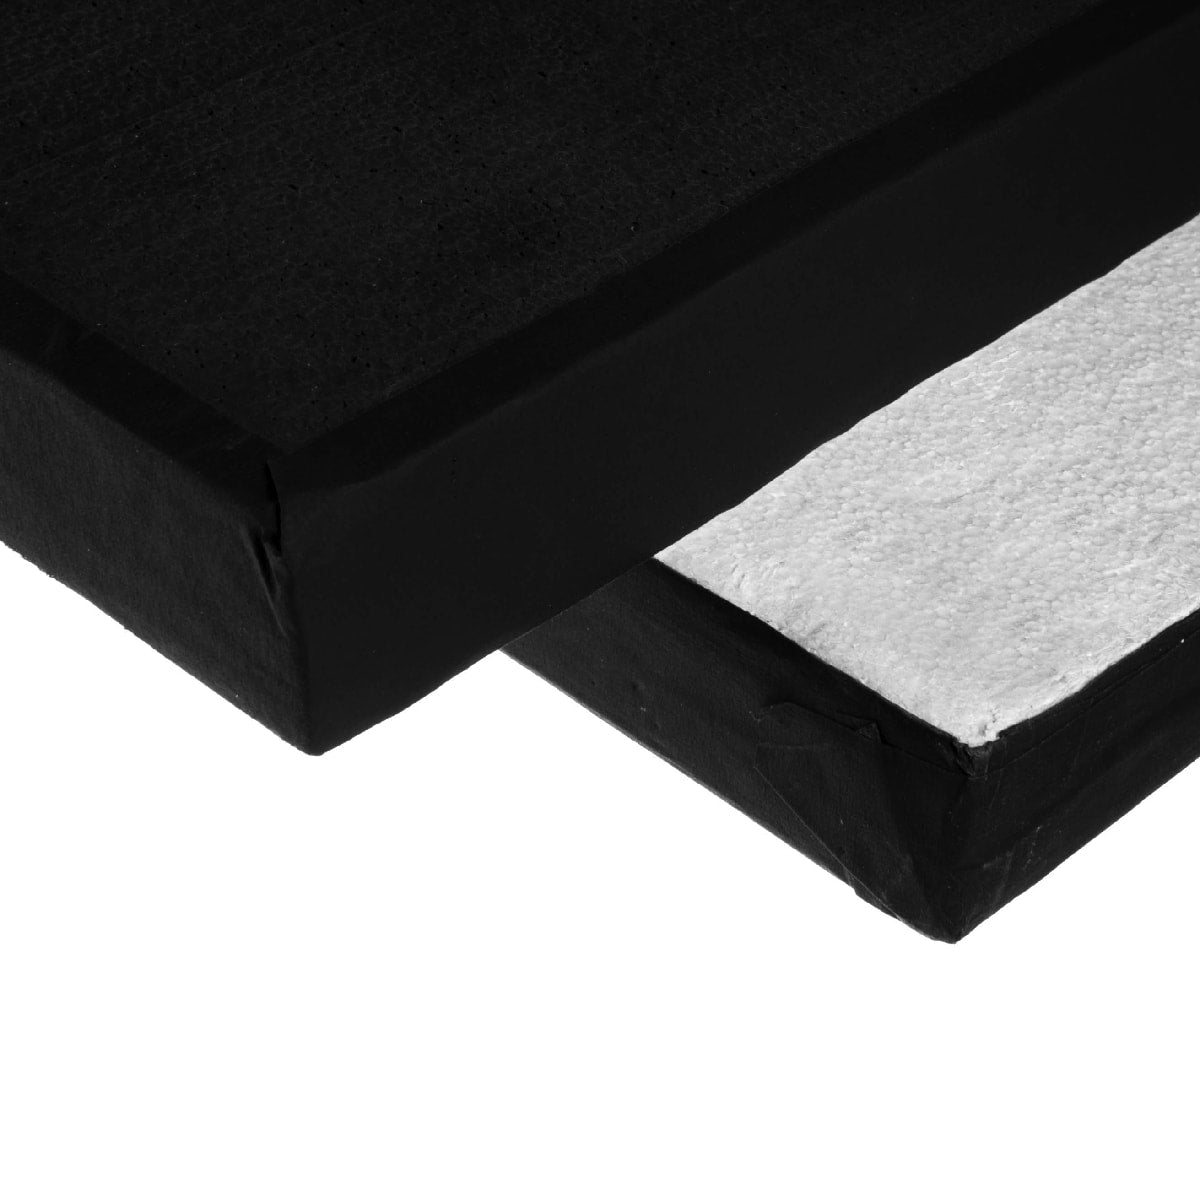  Polyboard black/white 120 x 120 cm / 4 x 4'